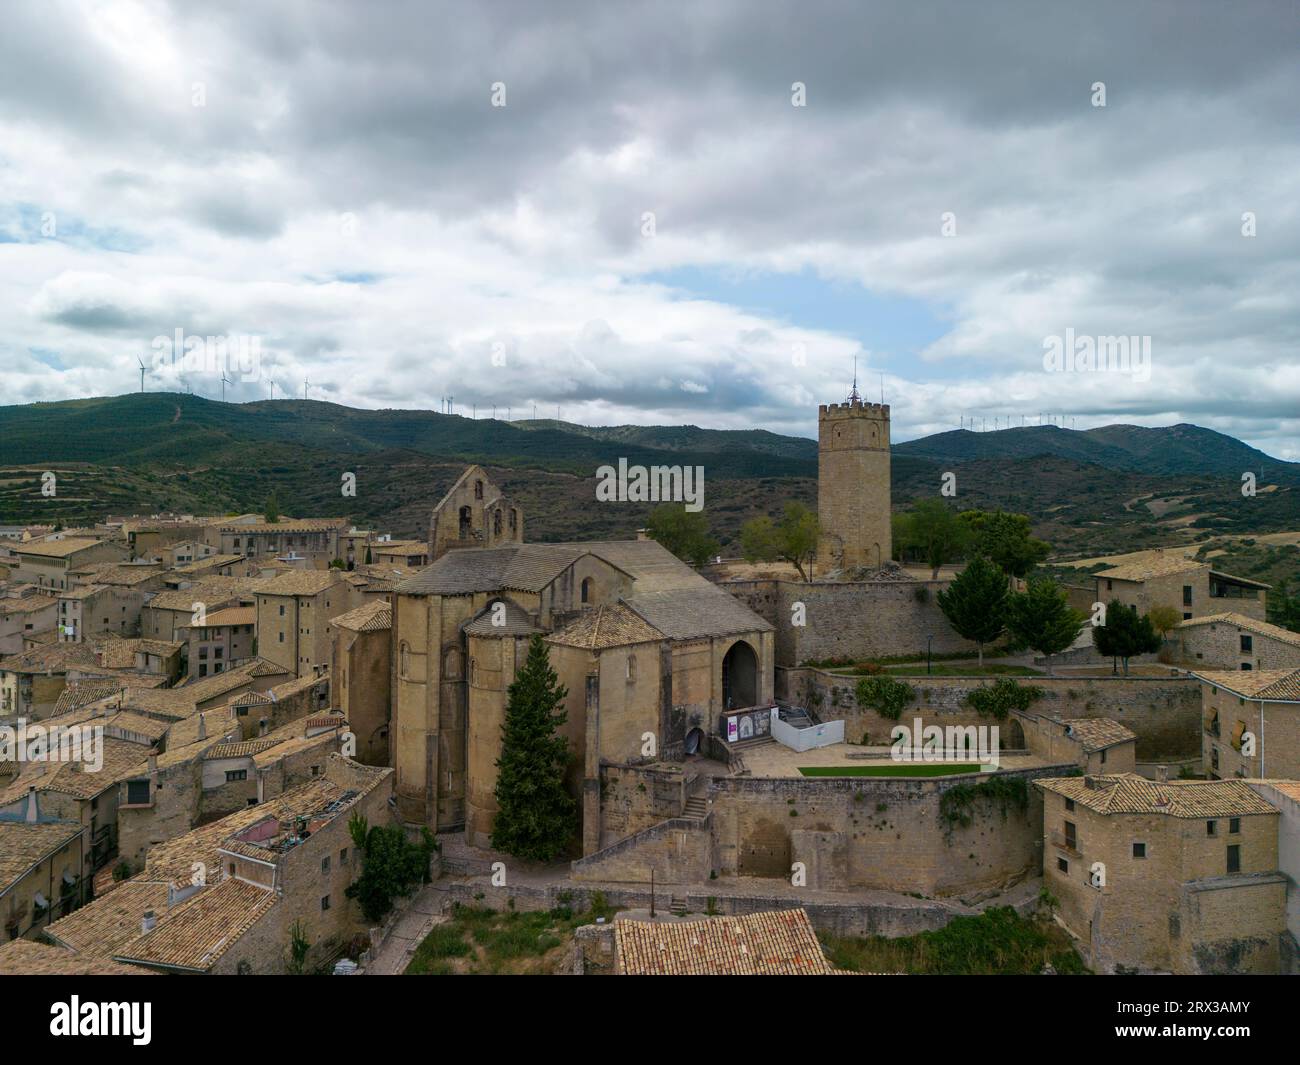 Vista aerea della città medievale di SOS del Rey Católico ad Aragona, Spagna. Foto Stock